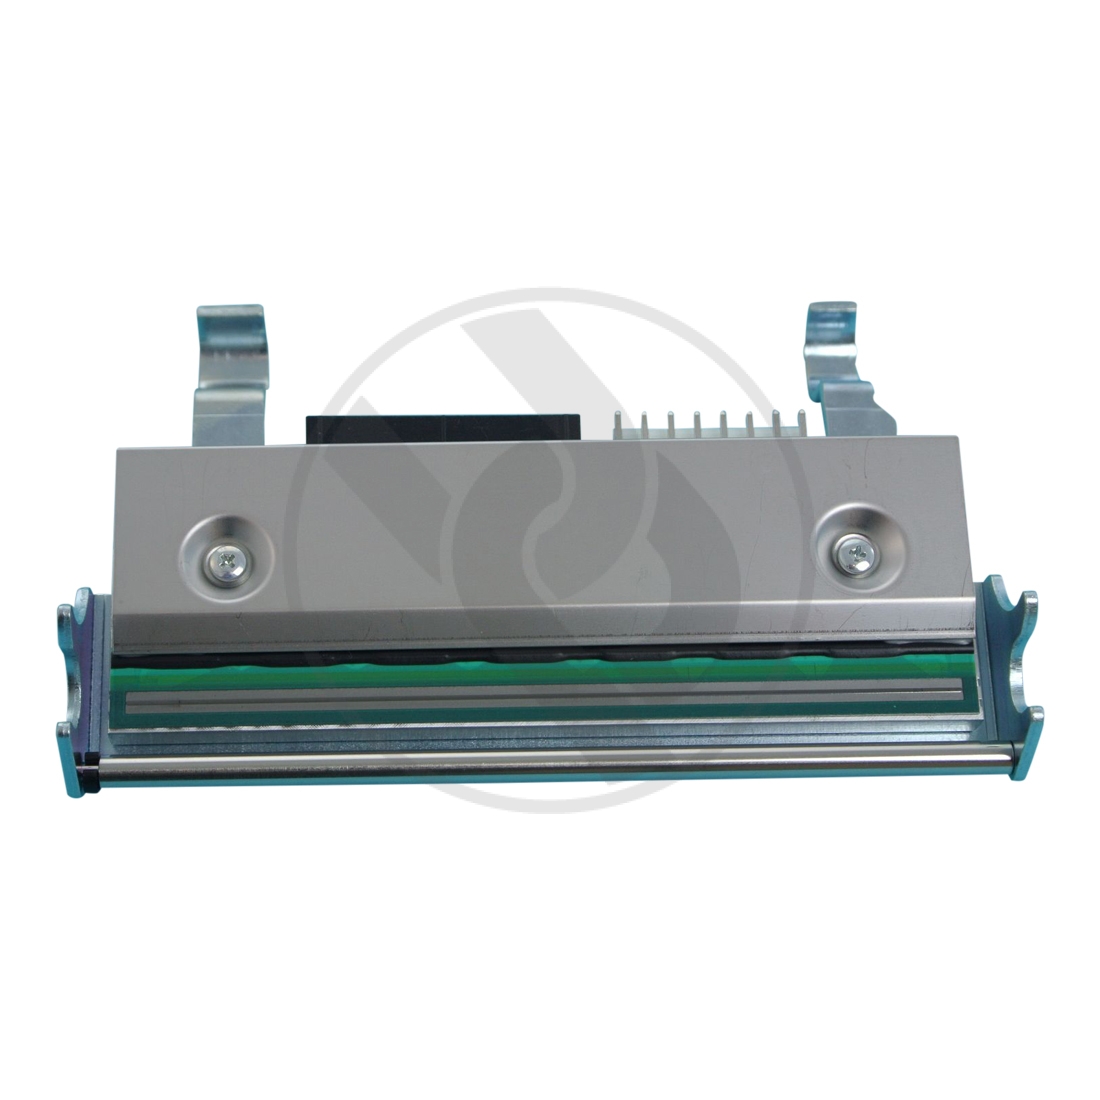 Thermal printhead, 1-040083-90, for Intermec 104008390